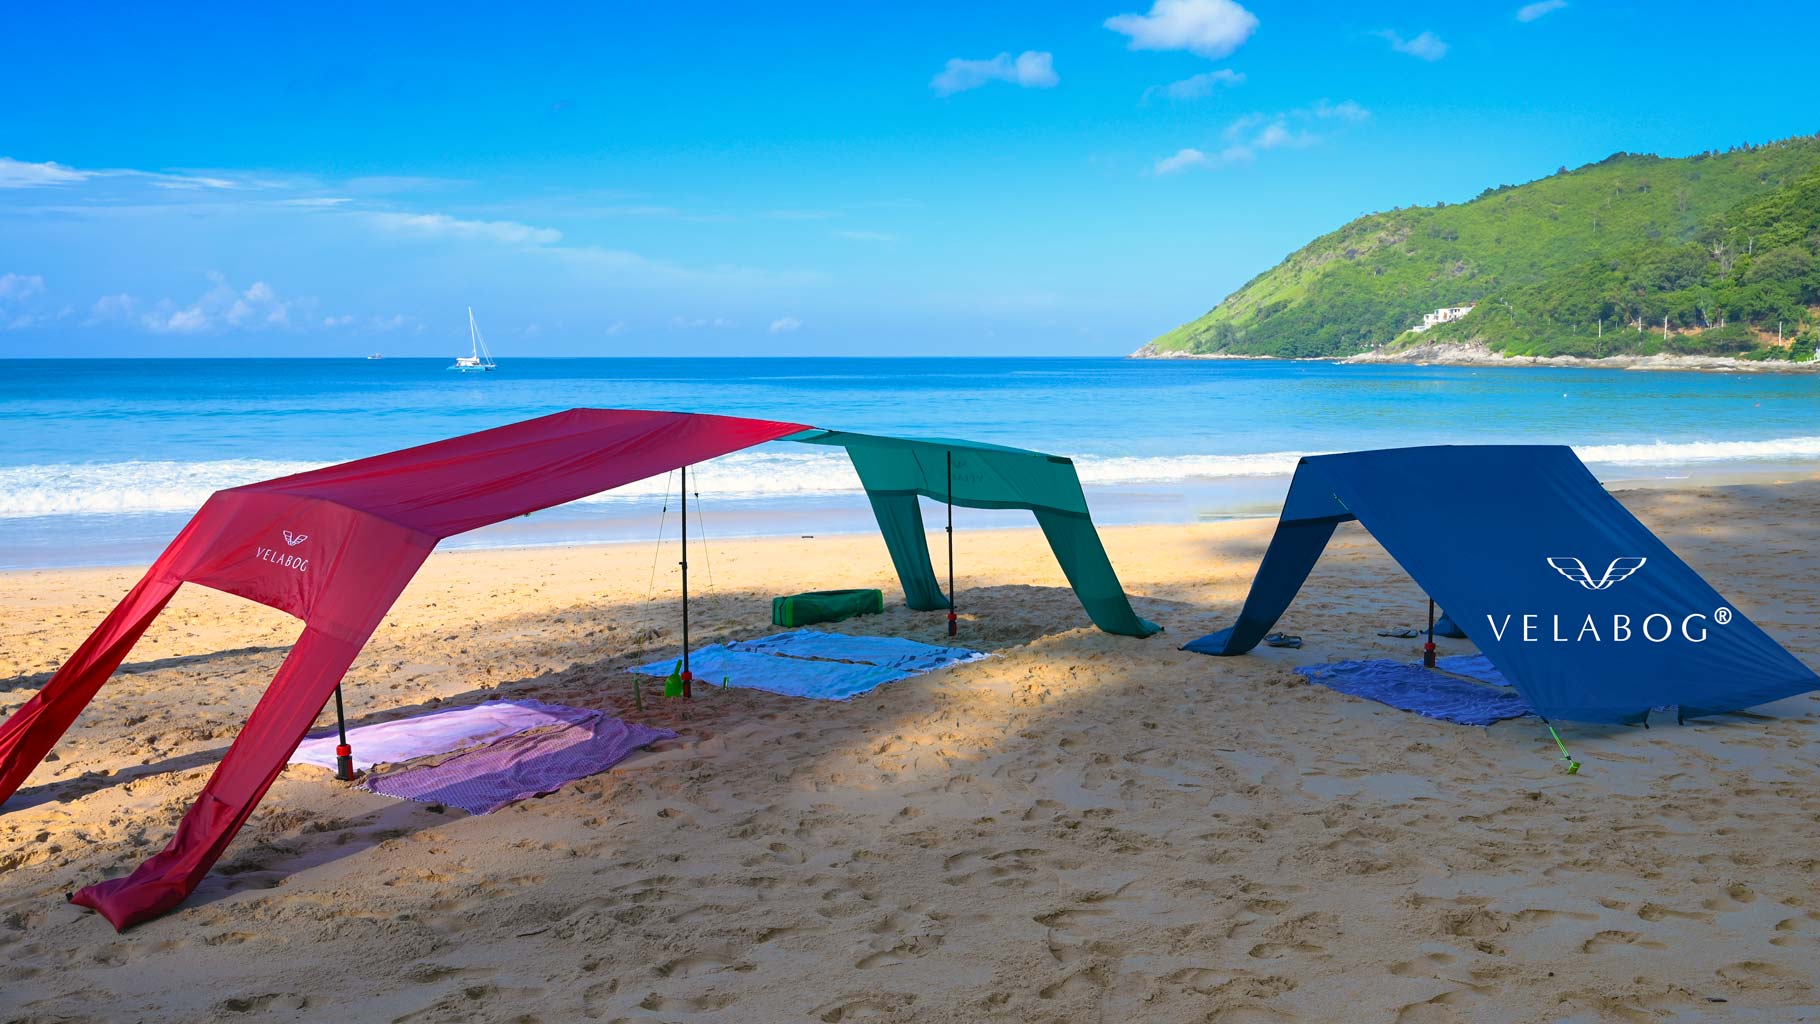 Trois voiles d’ombrage tentes plage Velabog Breeze sur une plage sans vent. Combinaison réalisée grâce au kit d’extension. Voile d’ombrage, parasol et tente de plage en un seul produit. Offre beaucoup d’ombre pour toute la famille et les amis.